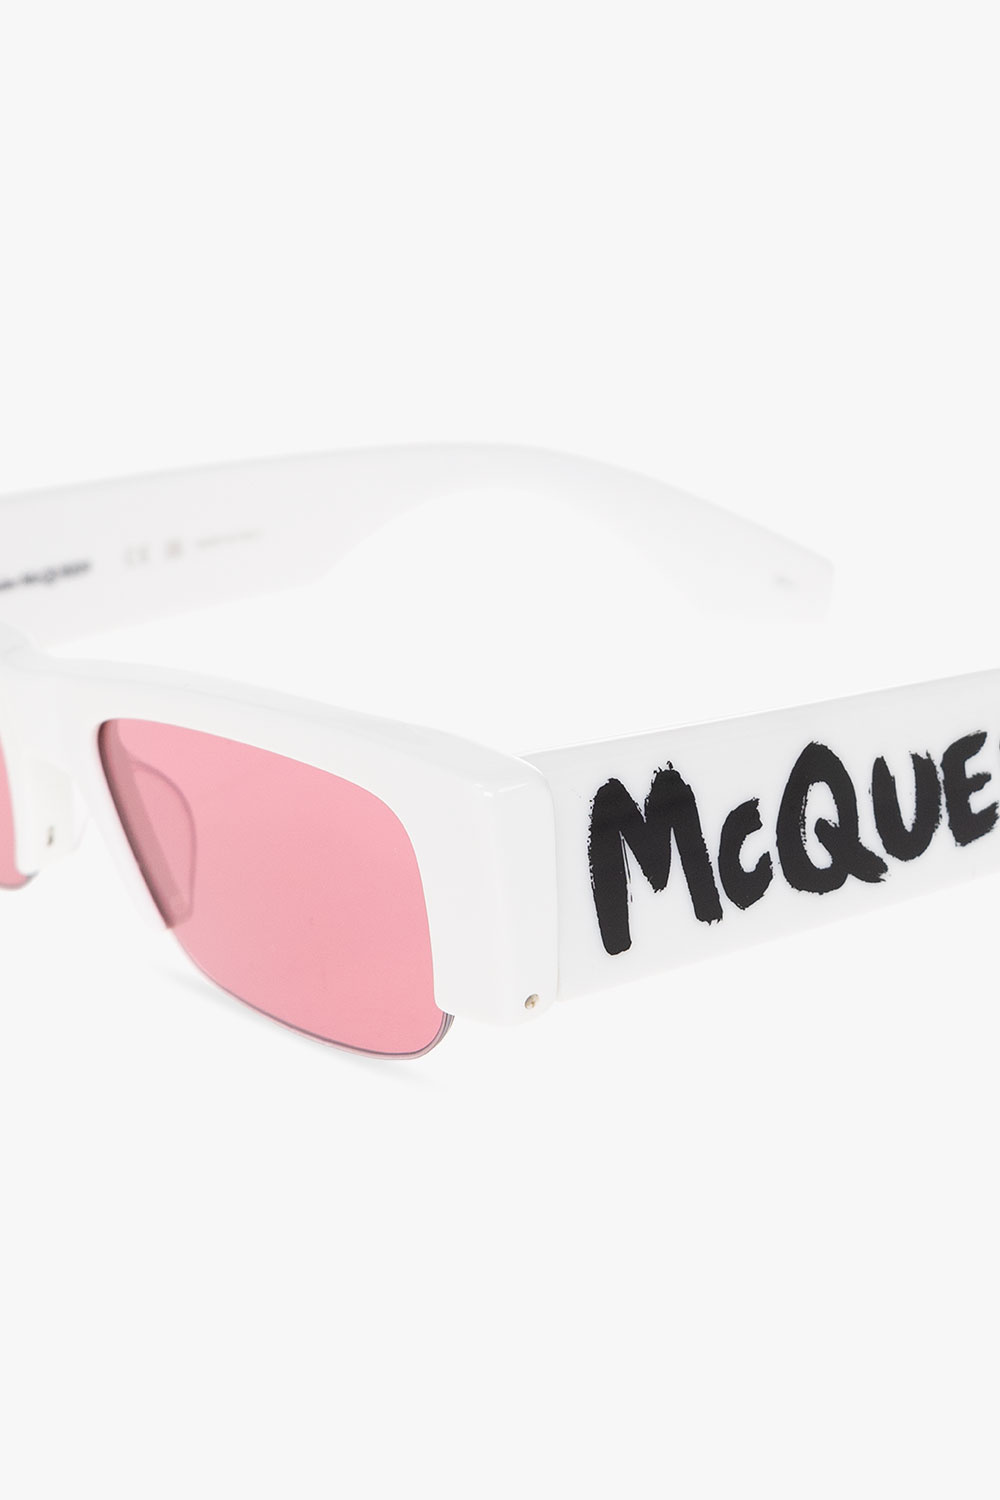 Alexander McQueen prada grey runway sunglasses